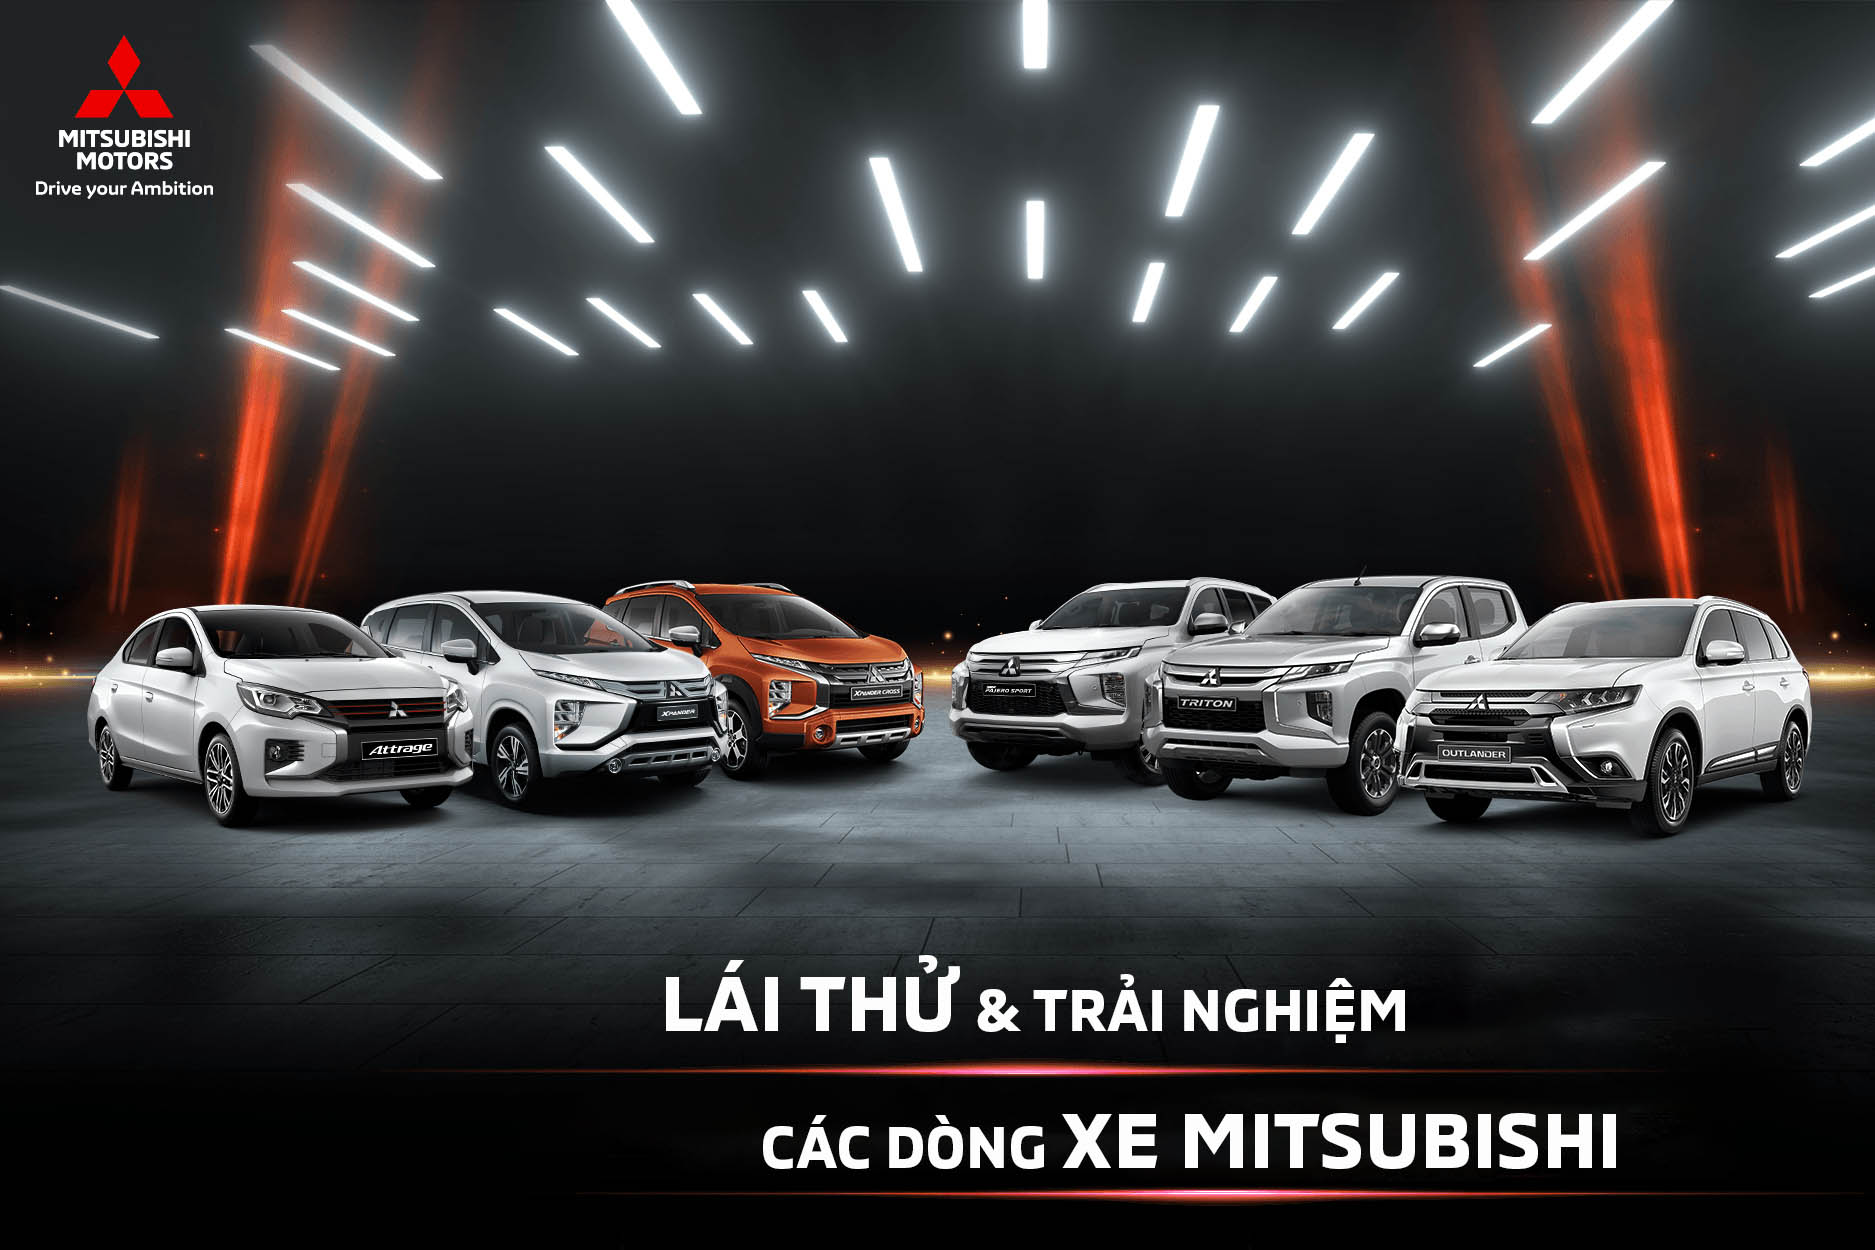 Mitsubishi Bắc Ninh Auto là địa chỉ tin cậy dành cho những ai đang tìm kiếm chiếc xe Mitsubishi hoàn hảo. Với đội ngũ kỹ thuật viên tay nghề cao cùng trang thiết bị hiện đại, Mitsubishi Bắc Ninh Auto cam kết sẽ đem đến cho khách hàng những trải nghiệm tuyệt vời nhất khi sử dụng dòng xe này.